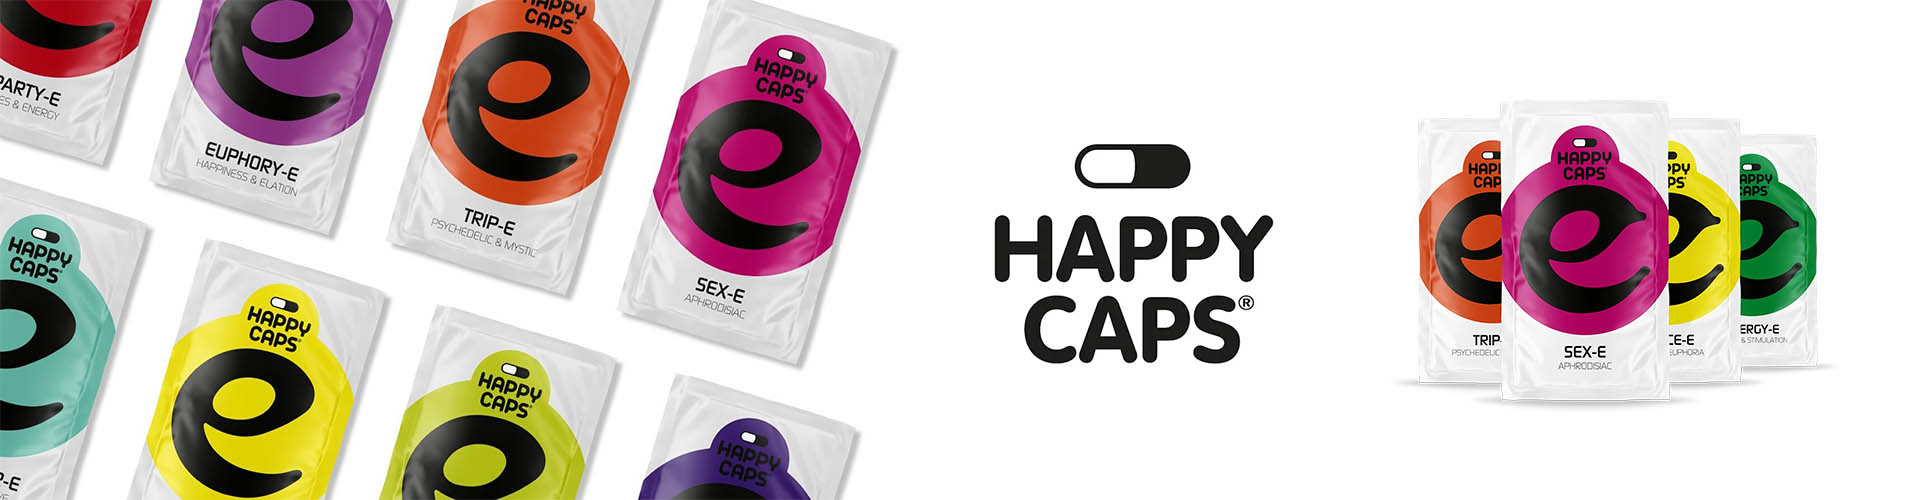 banner_happy_caps